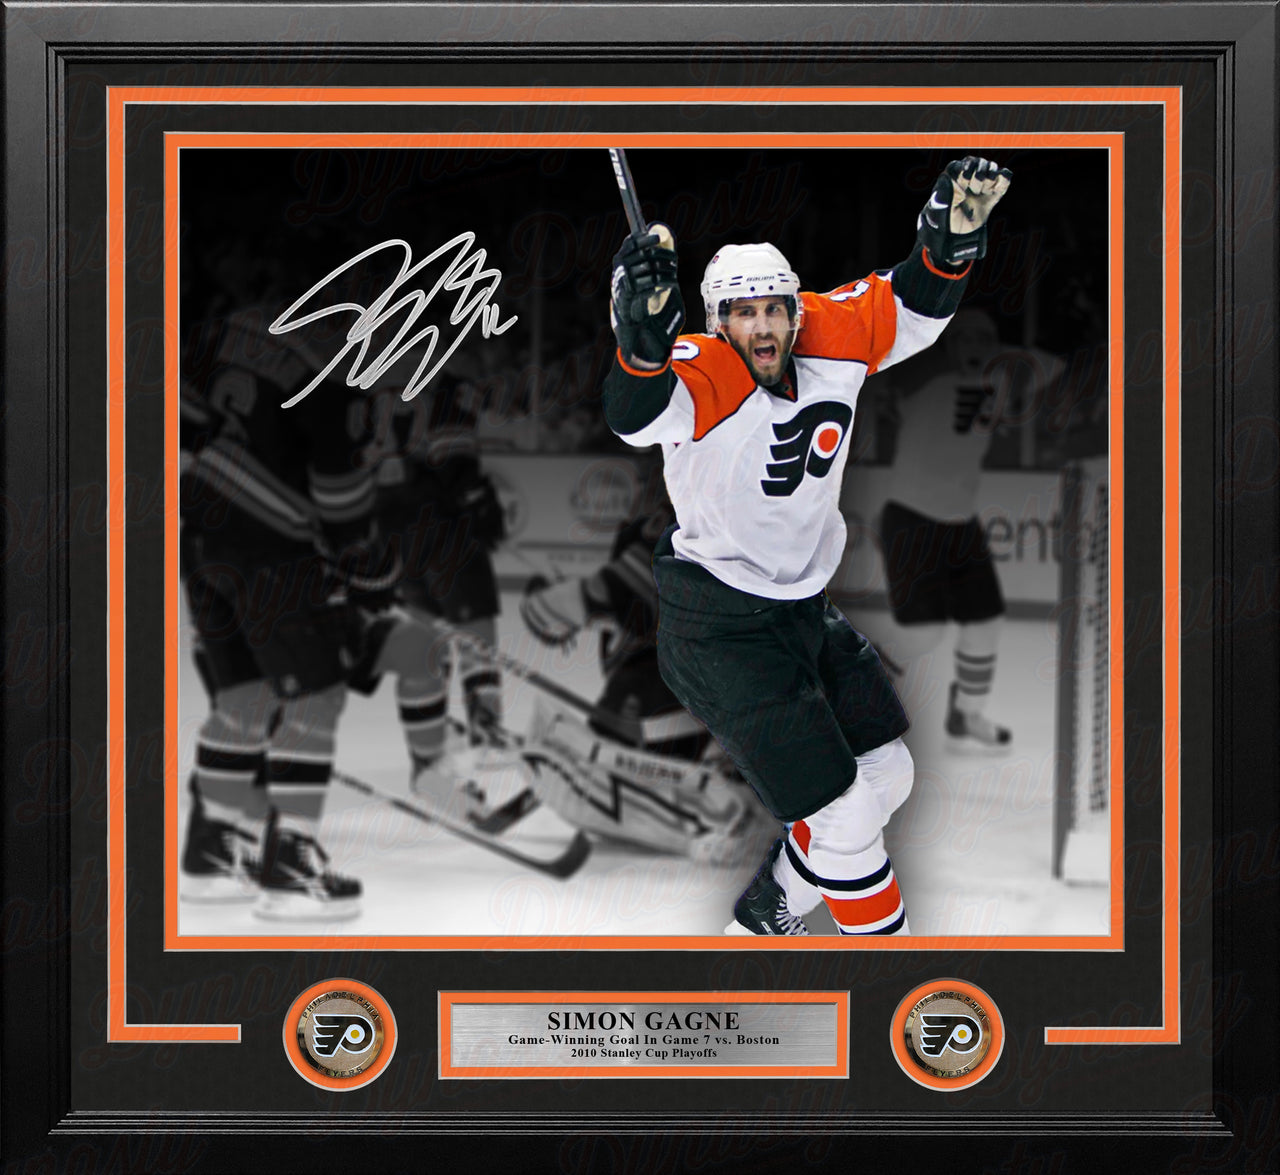 Simon Gagne Philadelphia Flyers Gm 7 Game-Winning Goal v Bruins Autographed 16x20 Framed Black Photo